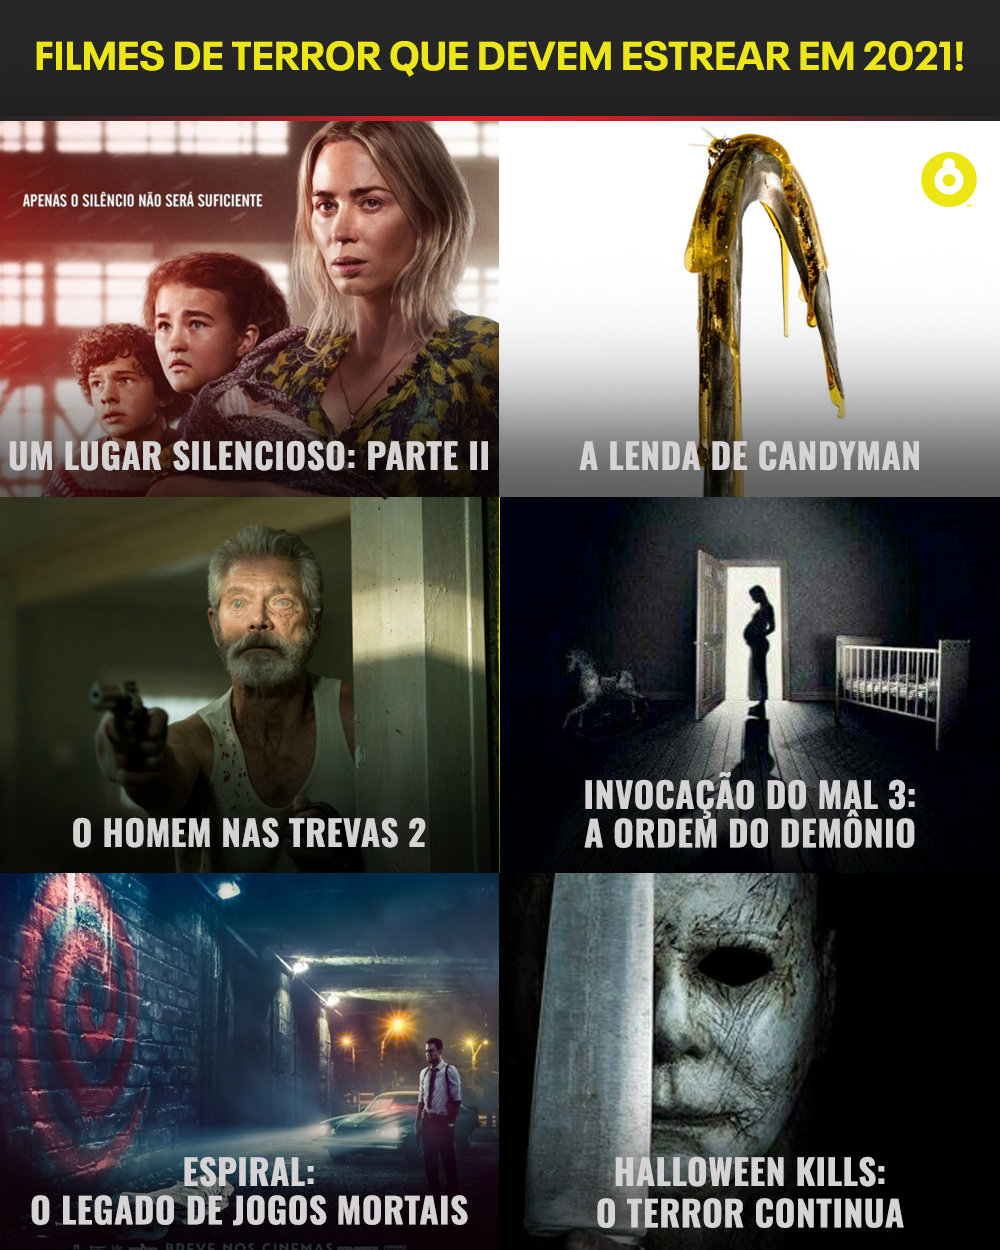 Space Brasil on X: Qual desses filmes de terror que devem estrear em 2021  você está com mais ansiedade de assistir?  / X